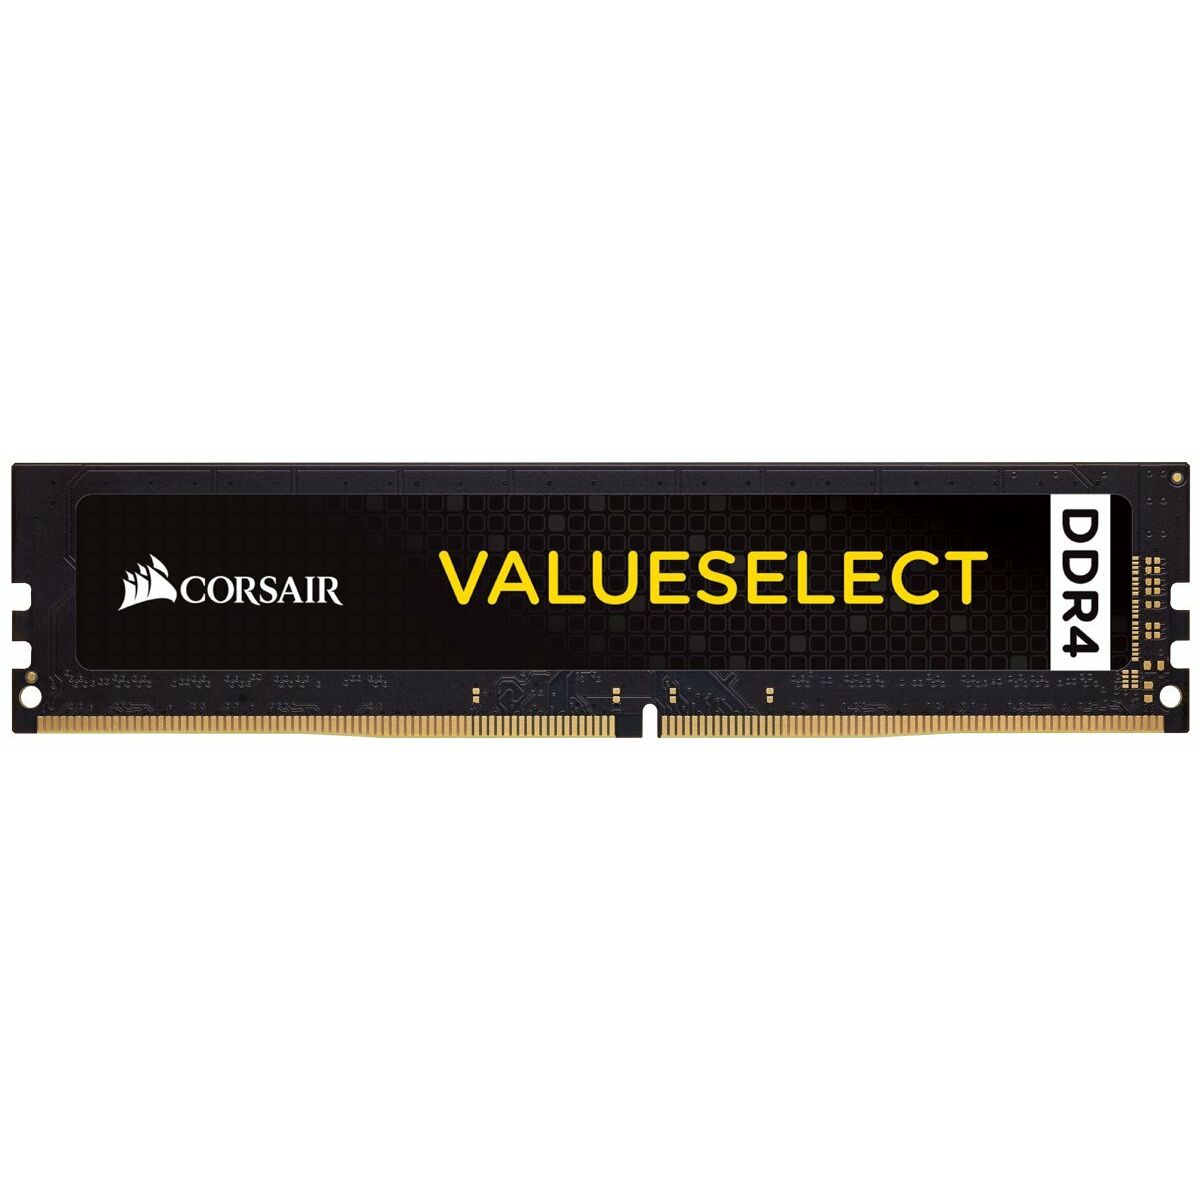 RAM Memory Corsair 8 GB, DDR4, 2666 MHz CL18 DDR4 8 GB DDR4-SDRAM